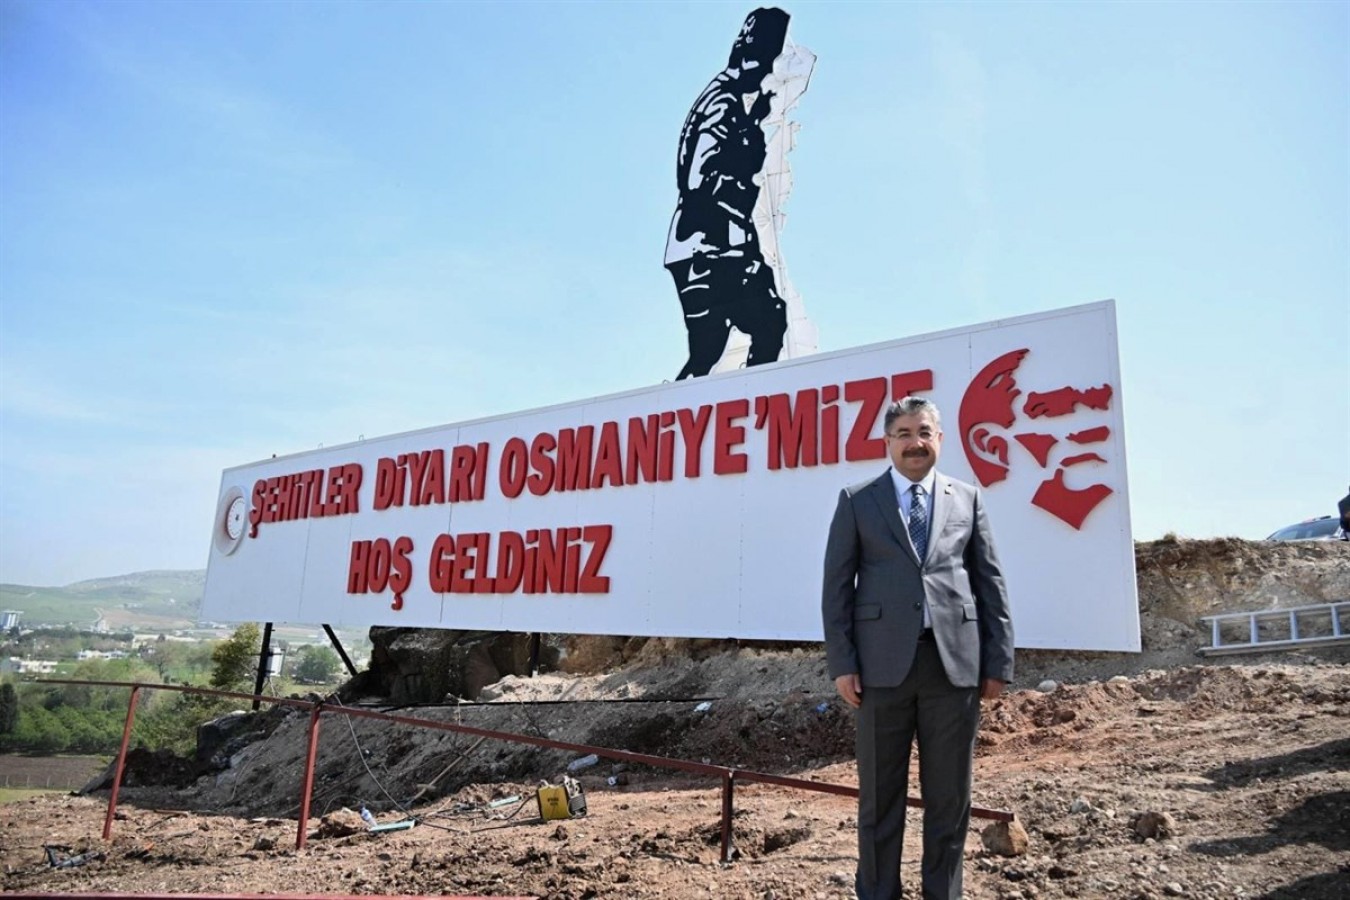 "Şehitler Diyarı Osmaniye'mize Hoş Geldiniz";